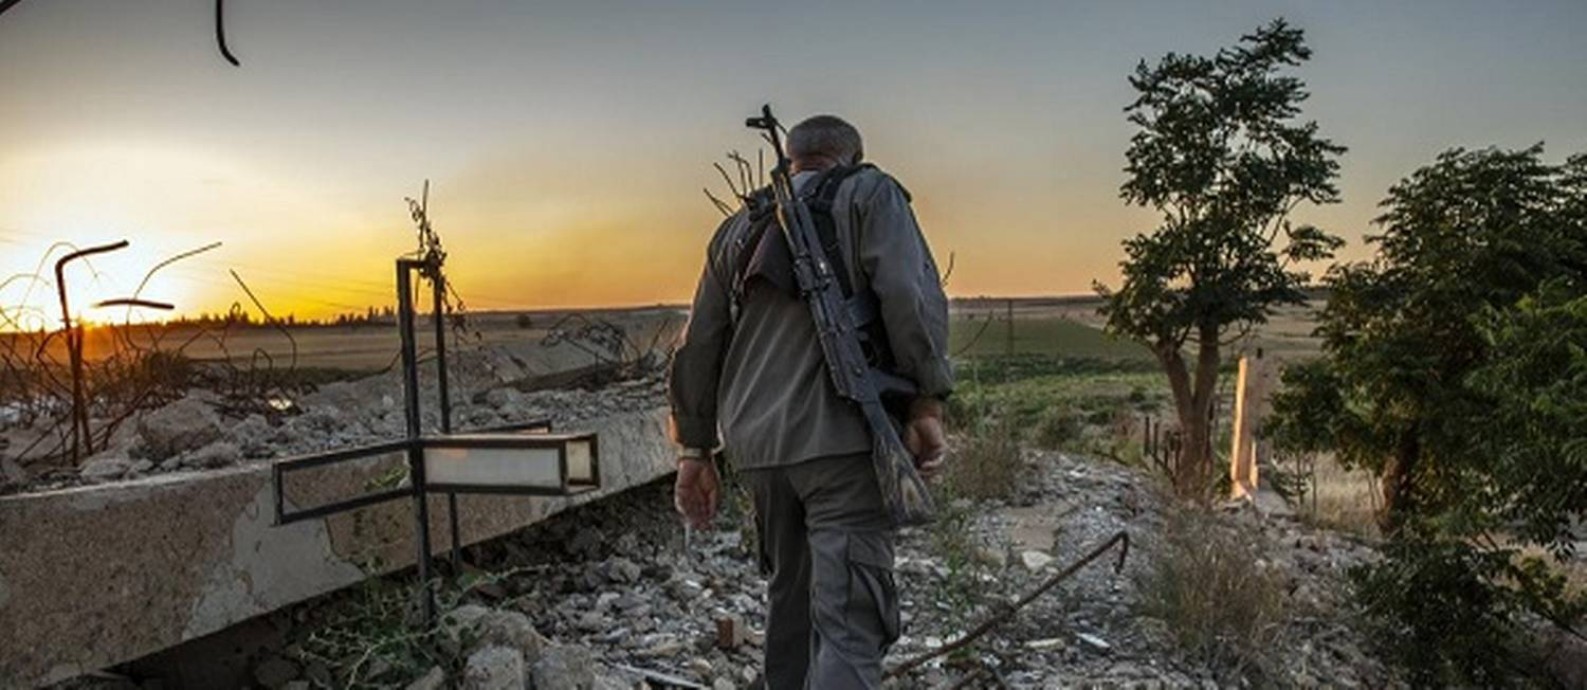 Homem anda pela aldeia de Baghuz, na Síria Foto: Ivor Prickett/New York Times